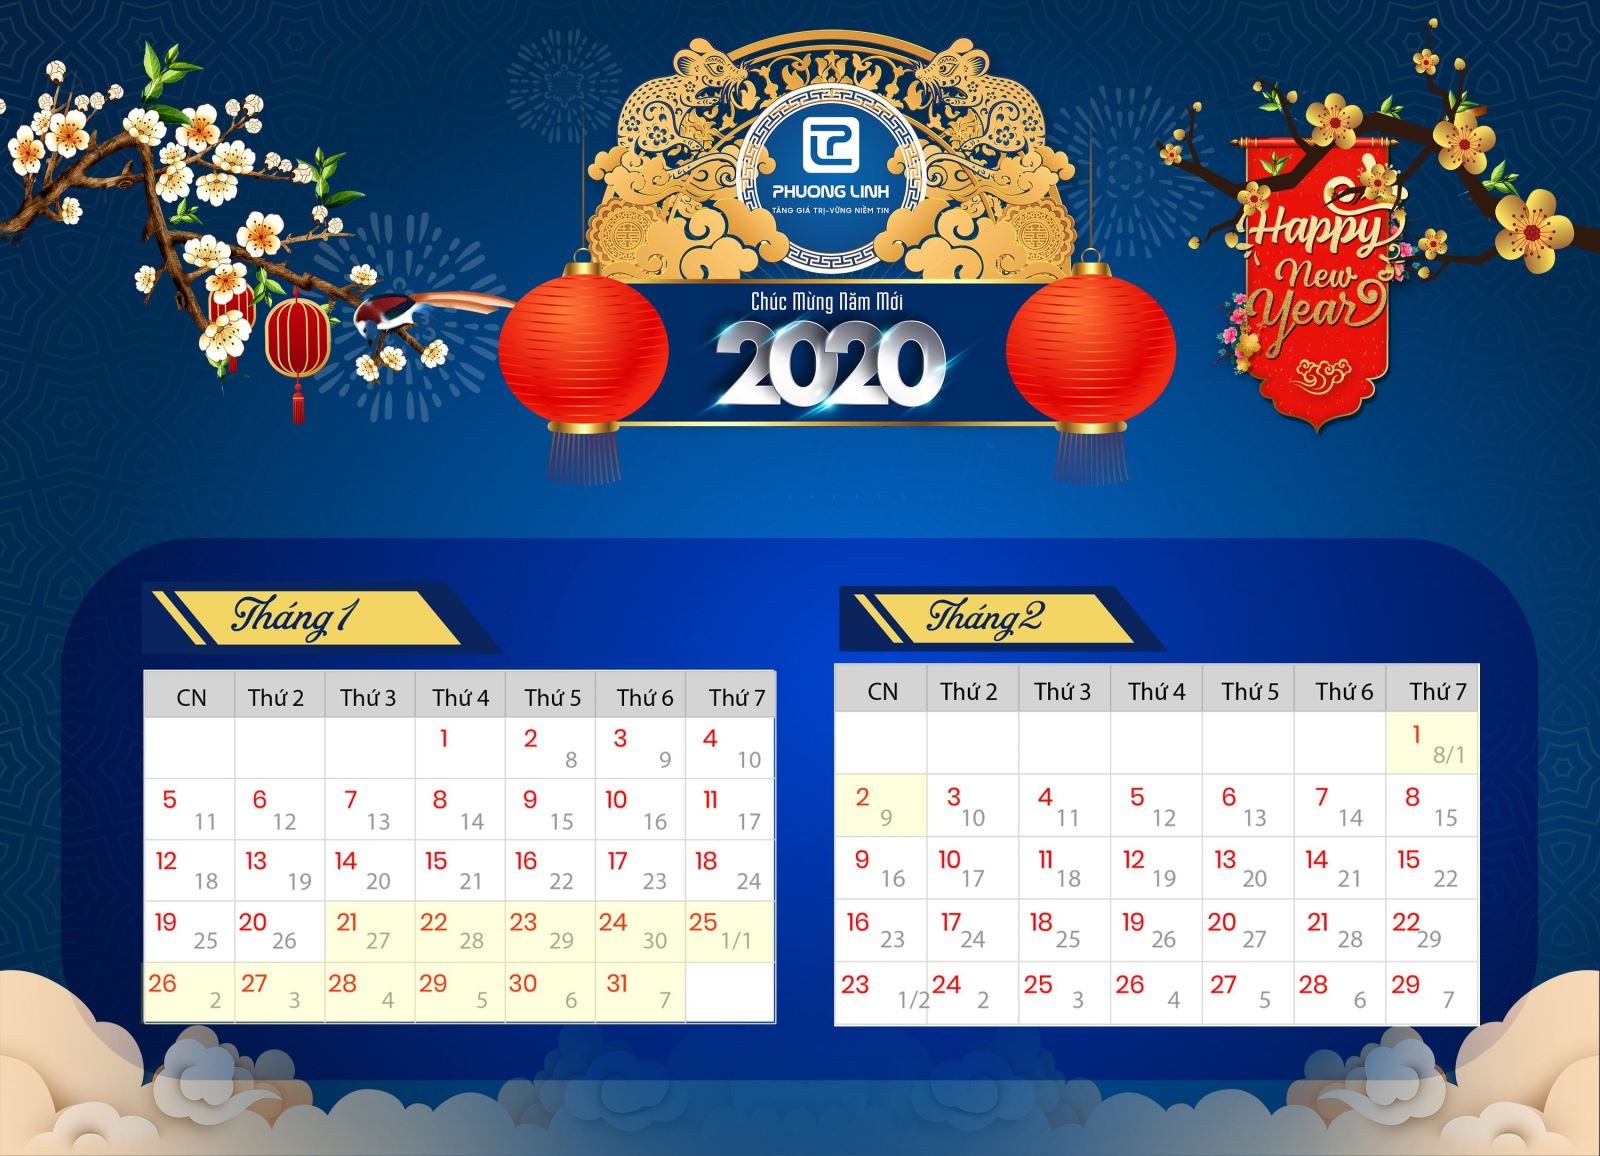 Phương Linh thông báo Lịch nghỉ Tết Nguyên Đán 2020